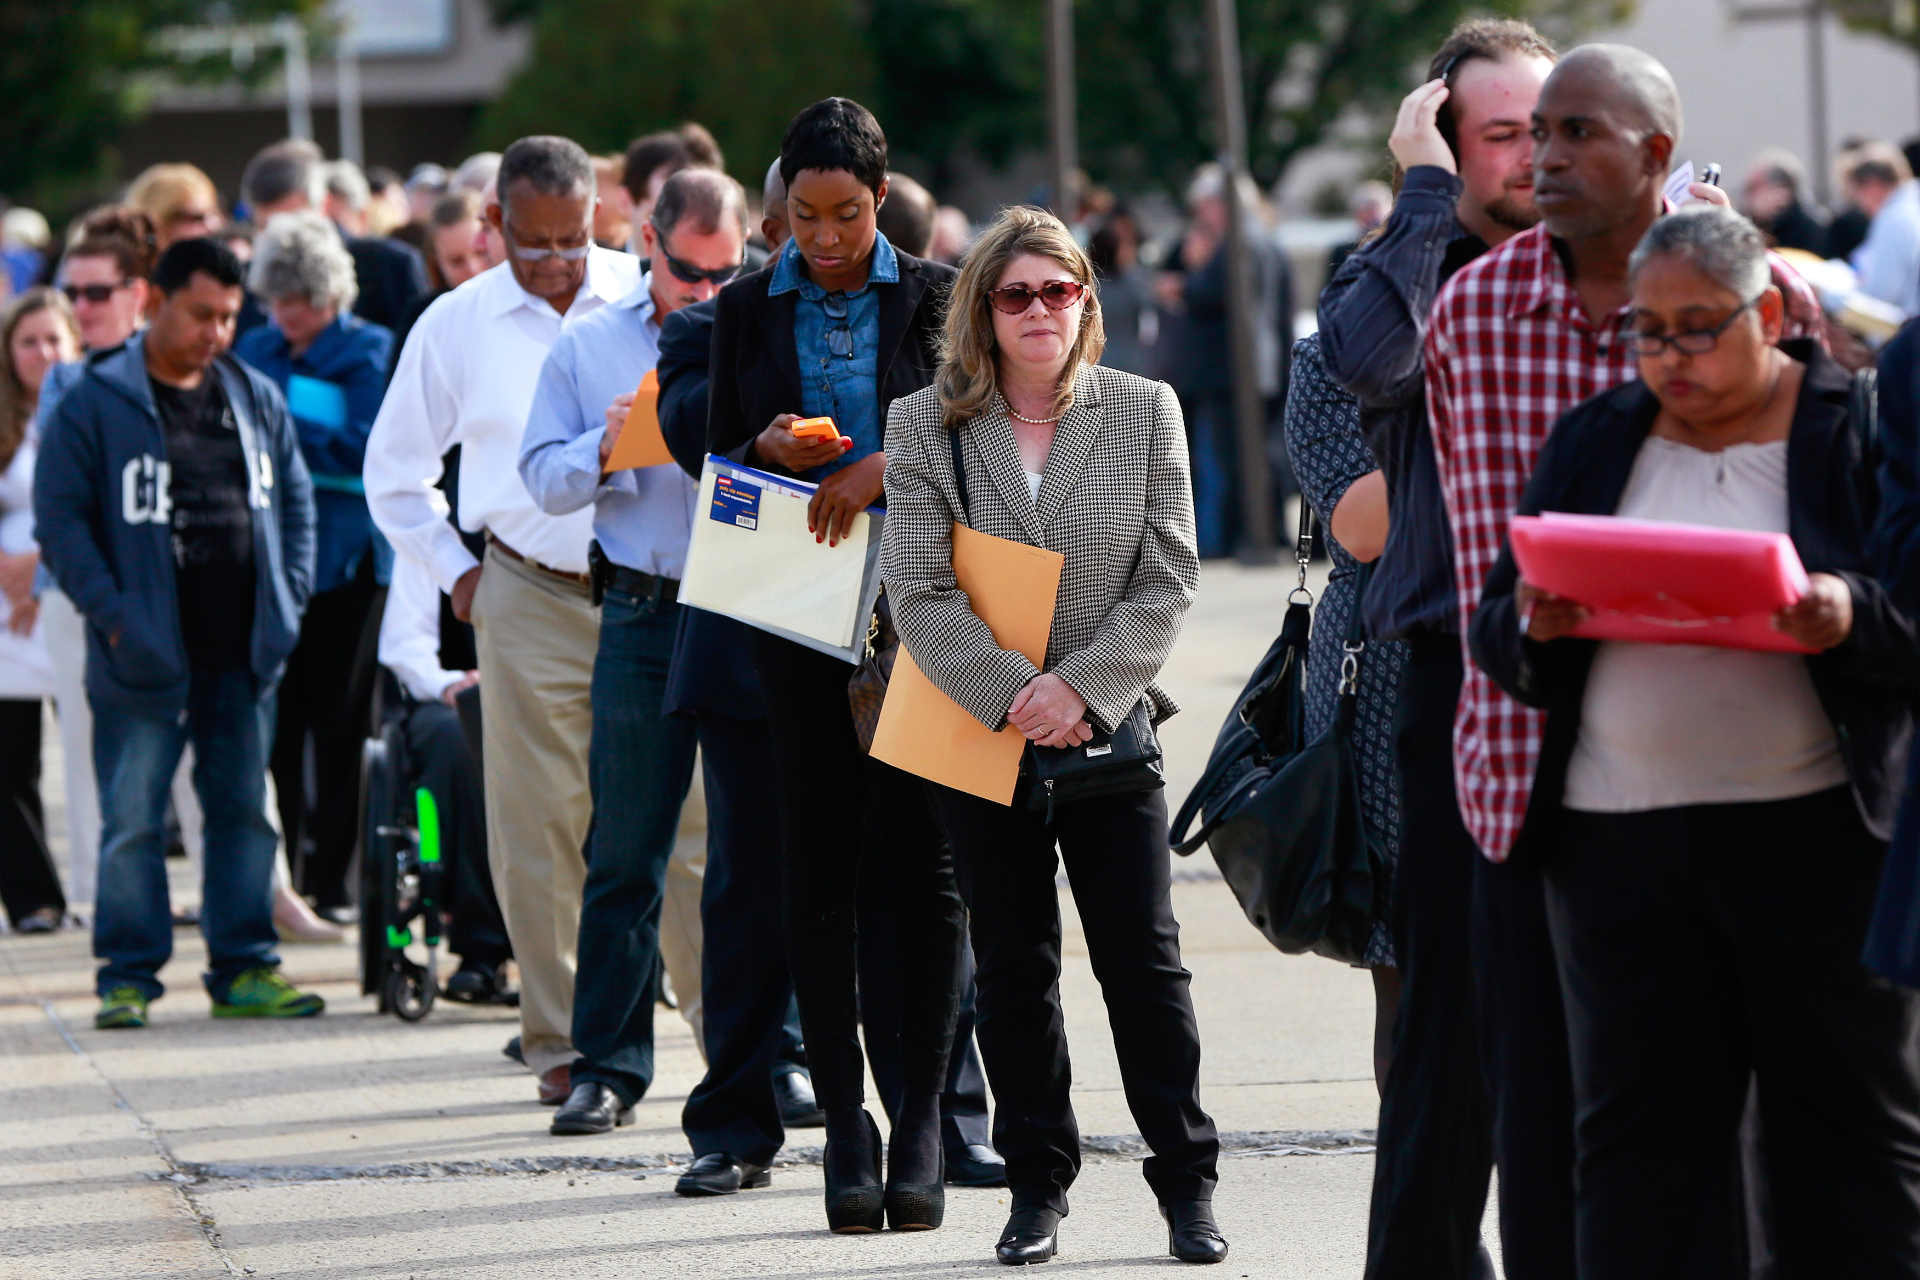 Em recuperação, mercado de trabalho dos EUA apresenta sinais de melhora